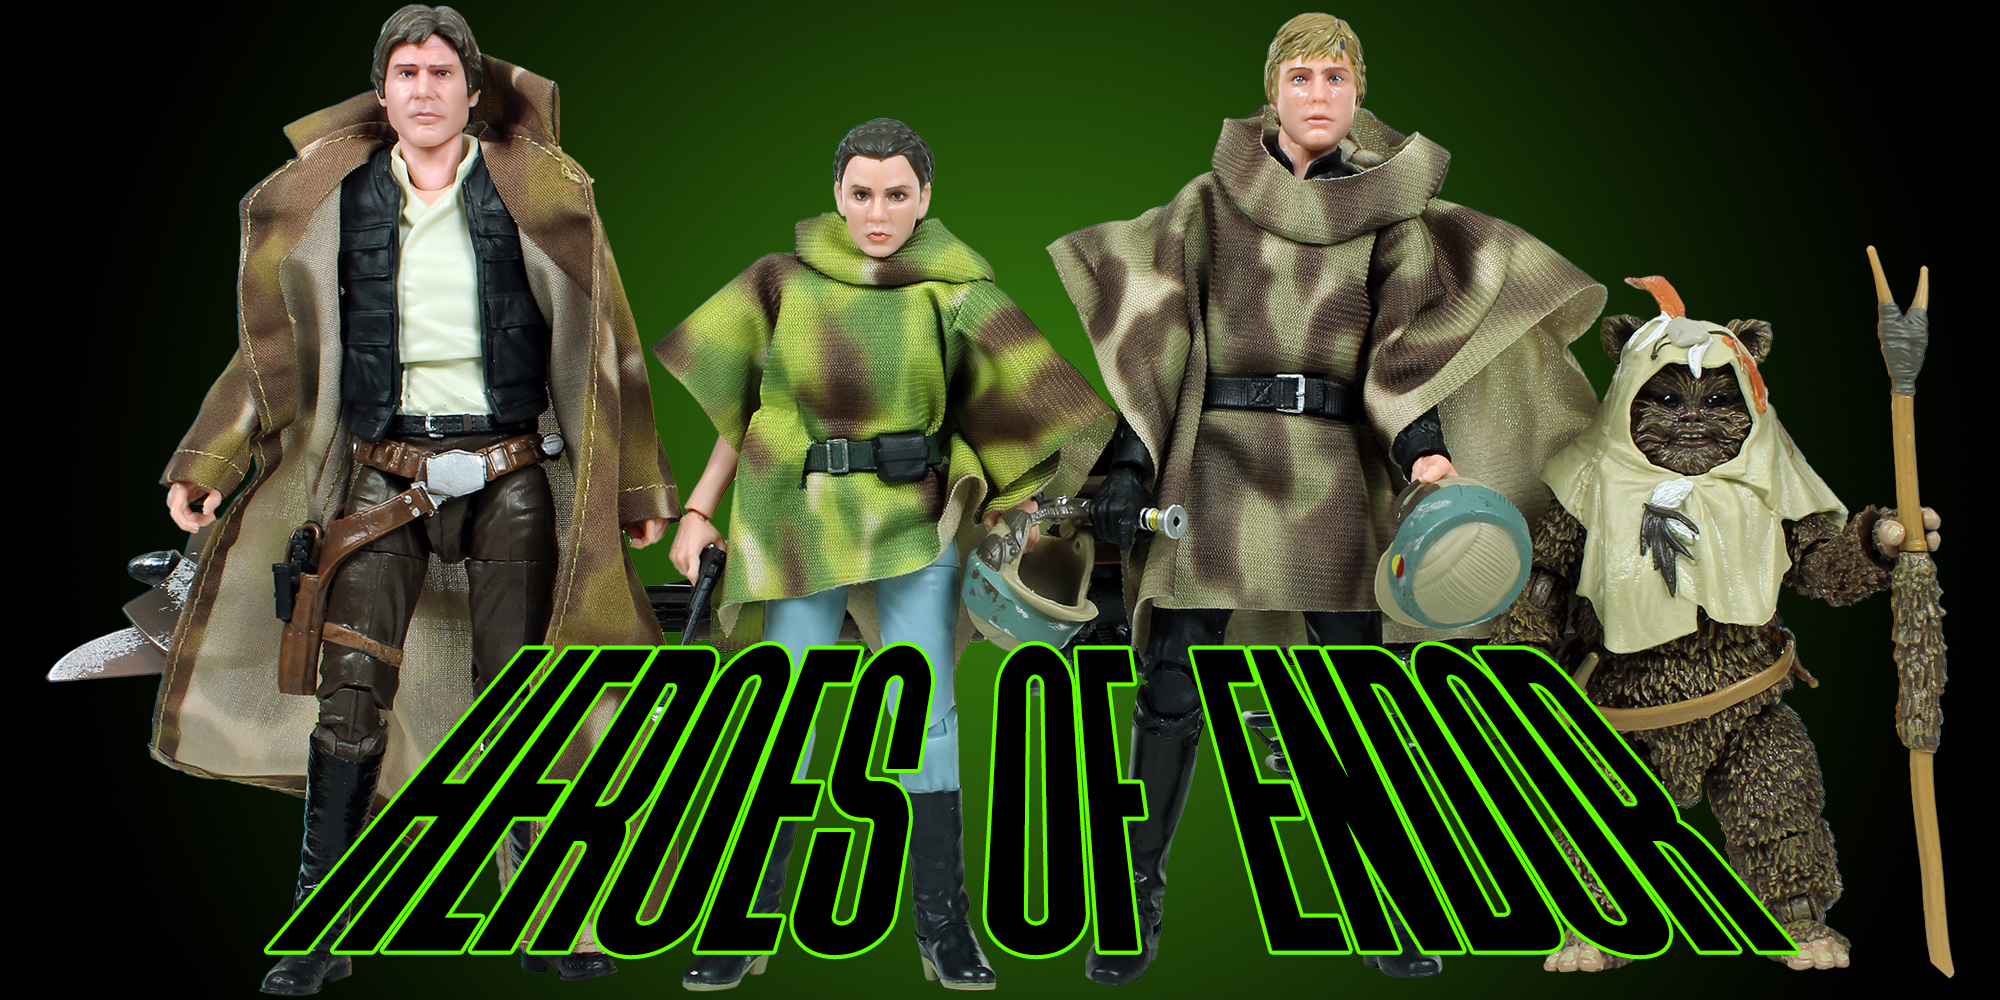 Heroes Of Endor